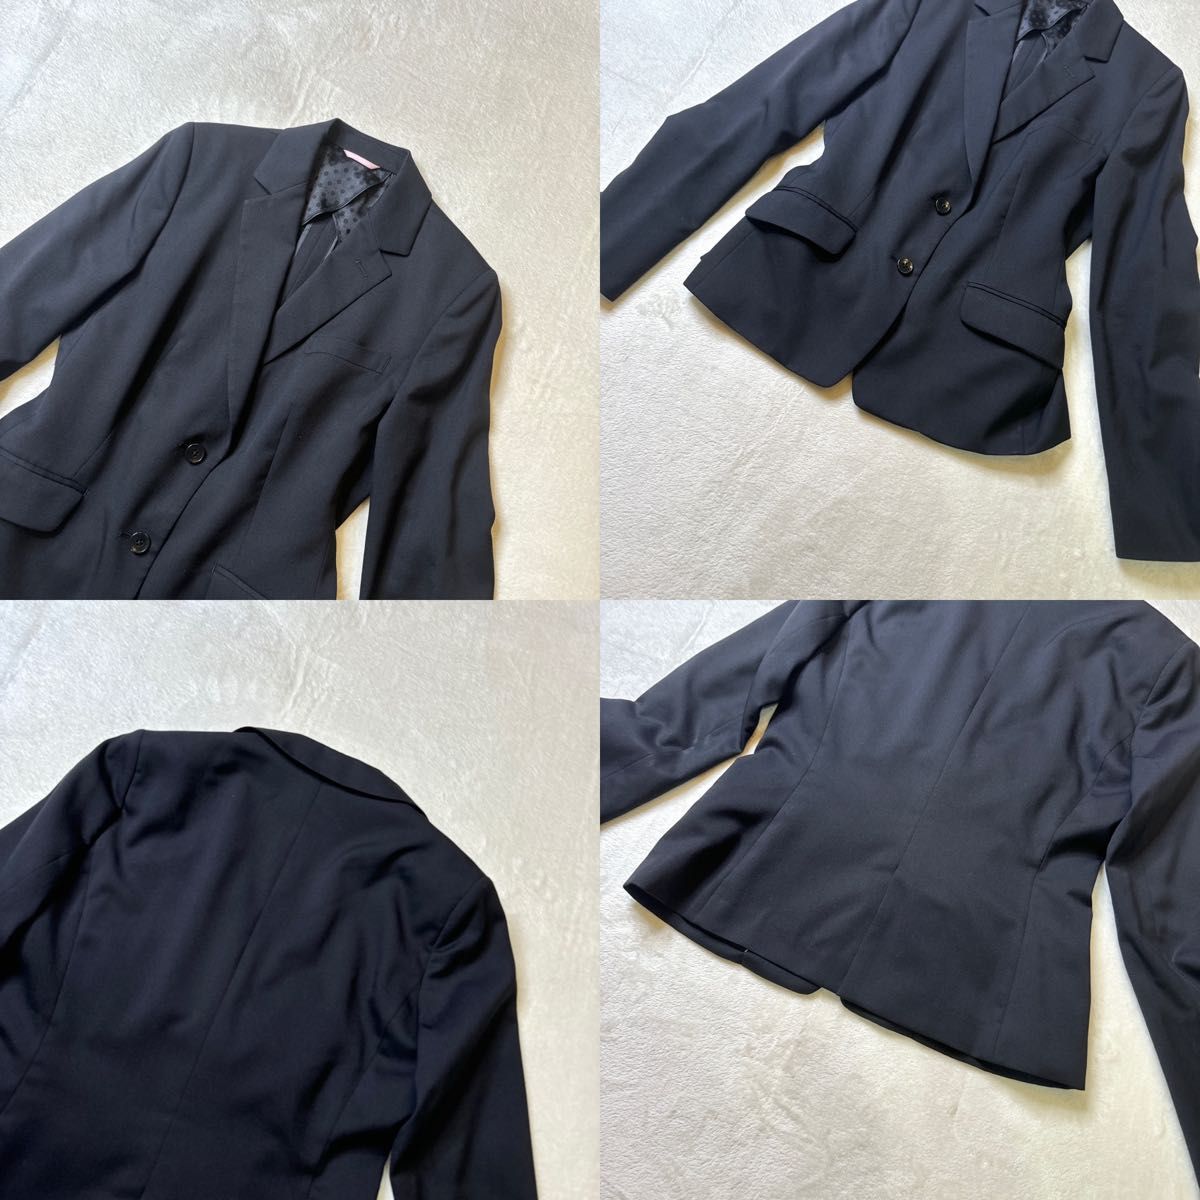 【美品】 エヌラインプレシャス セットアップ  スーツ 3点セット 13号 佐々木希  スカート パンツ  テーラードジャケット